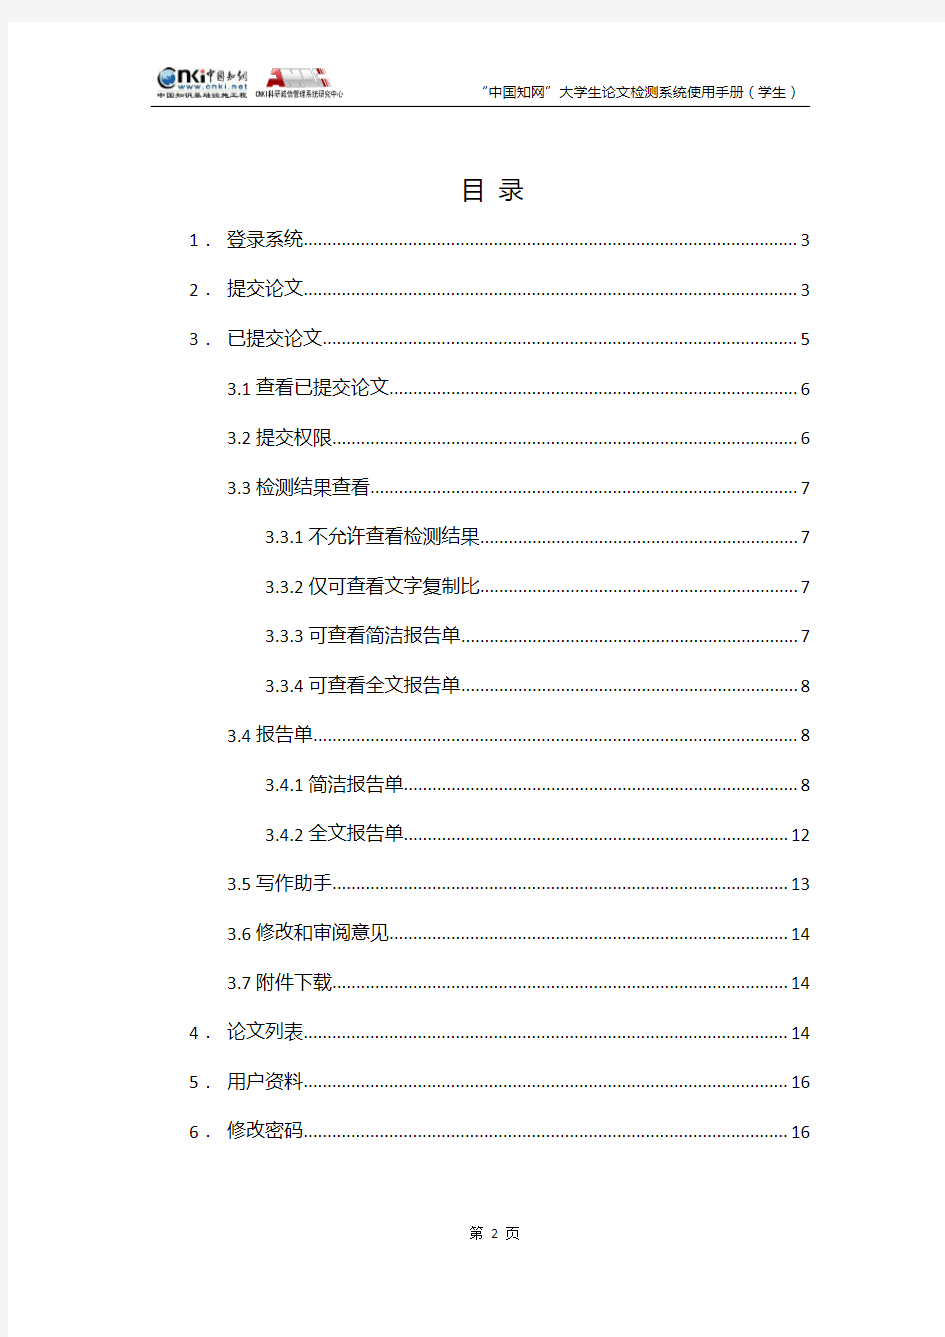 中国知网大学生论文检测系统使用手册(学生)